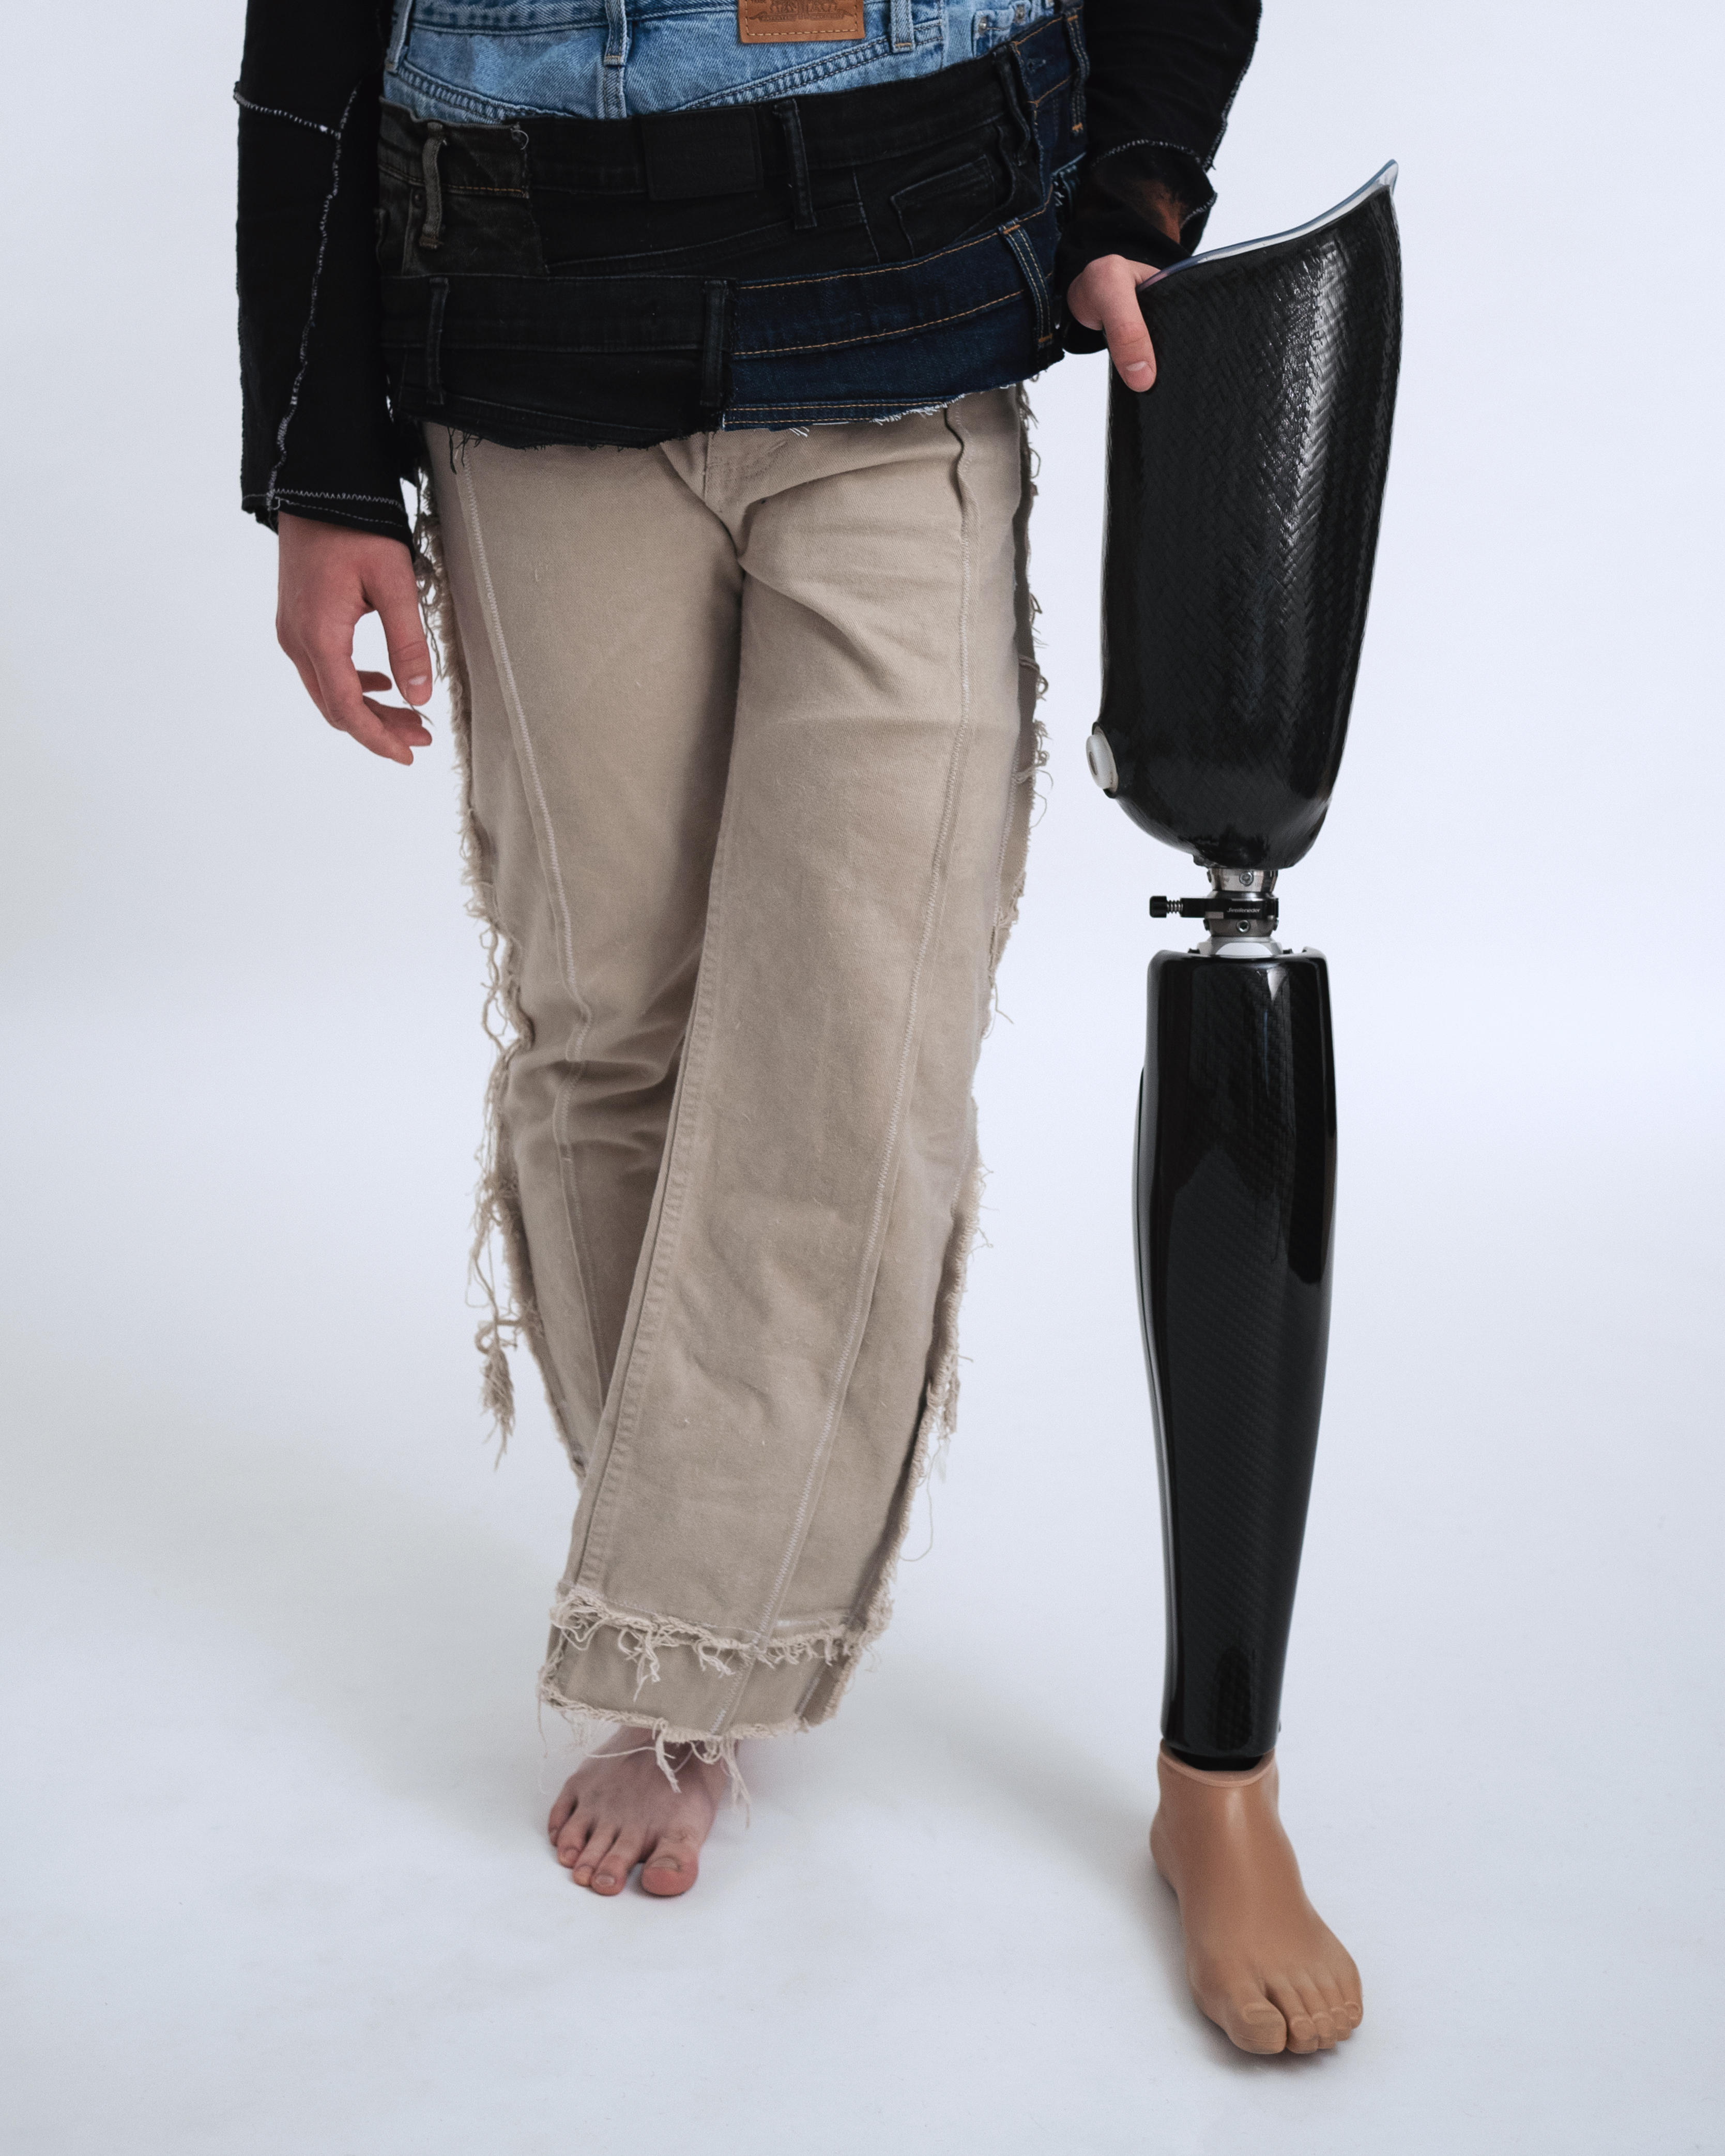 Косметическая оболочка на протез нижней конечности